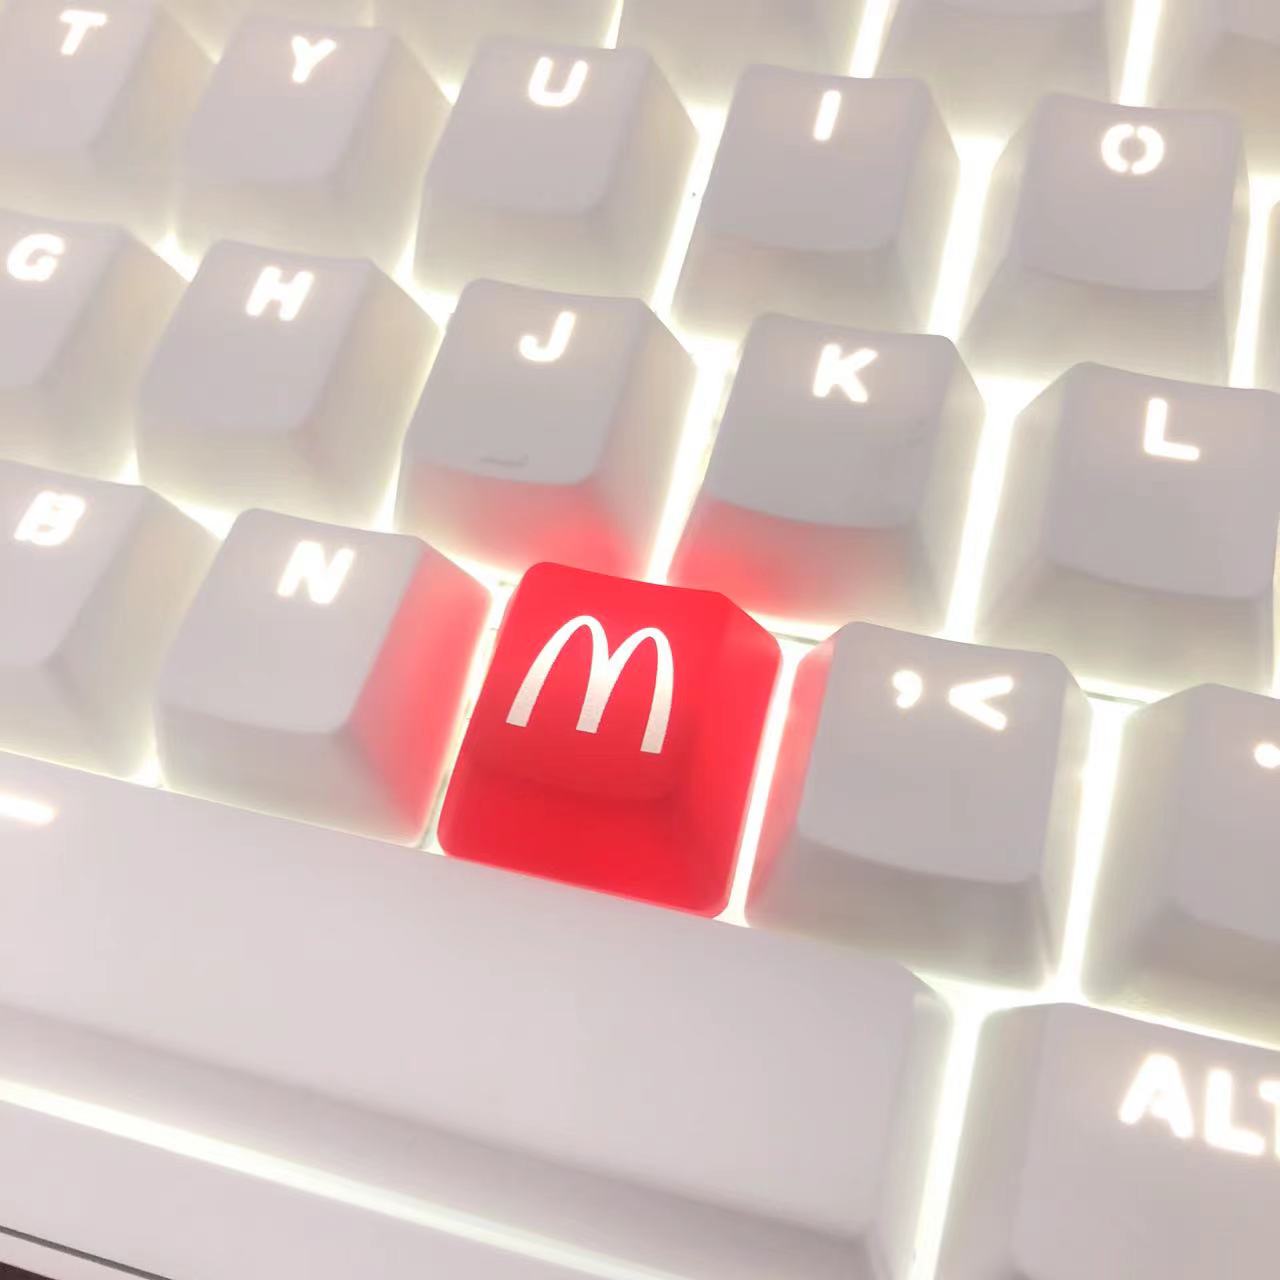 麦门麦当劳图案键帽透光机械键帽M键位专用机械键盘键帽一颗M图案